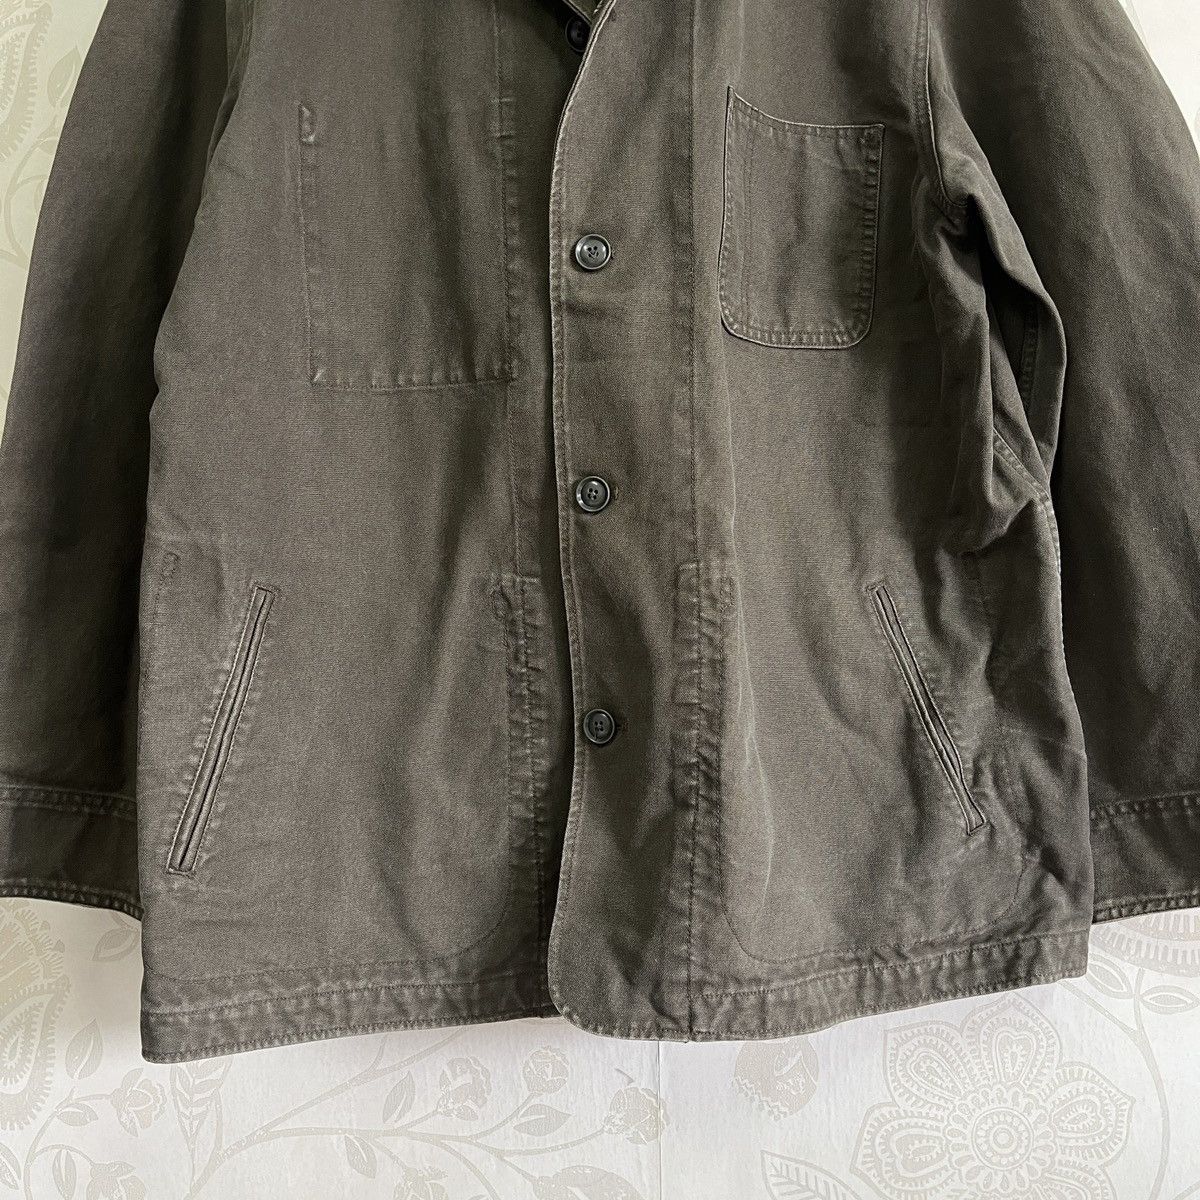 Uniqlo Chore Jacket Japan Size XL - 10